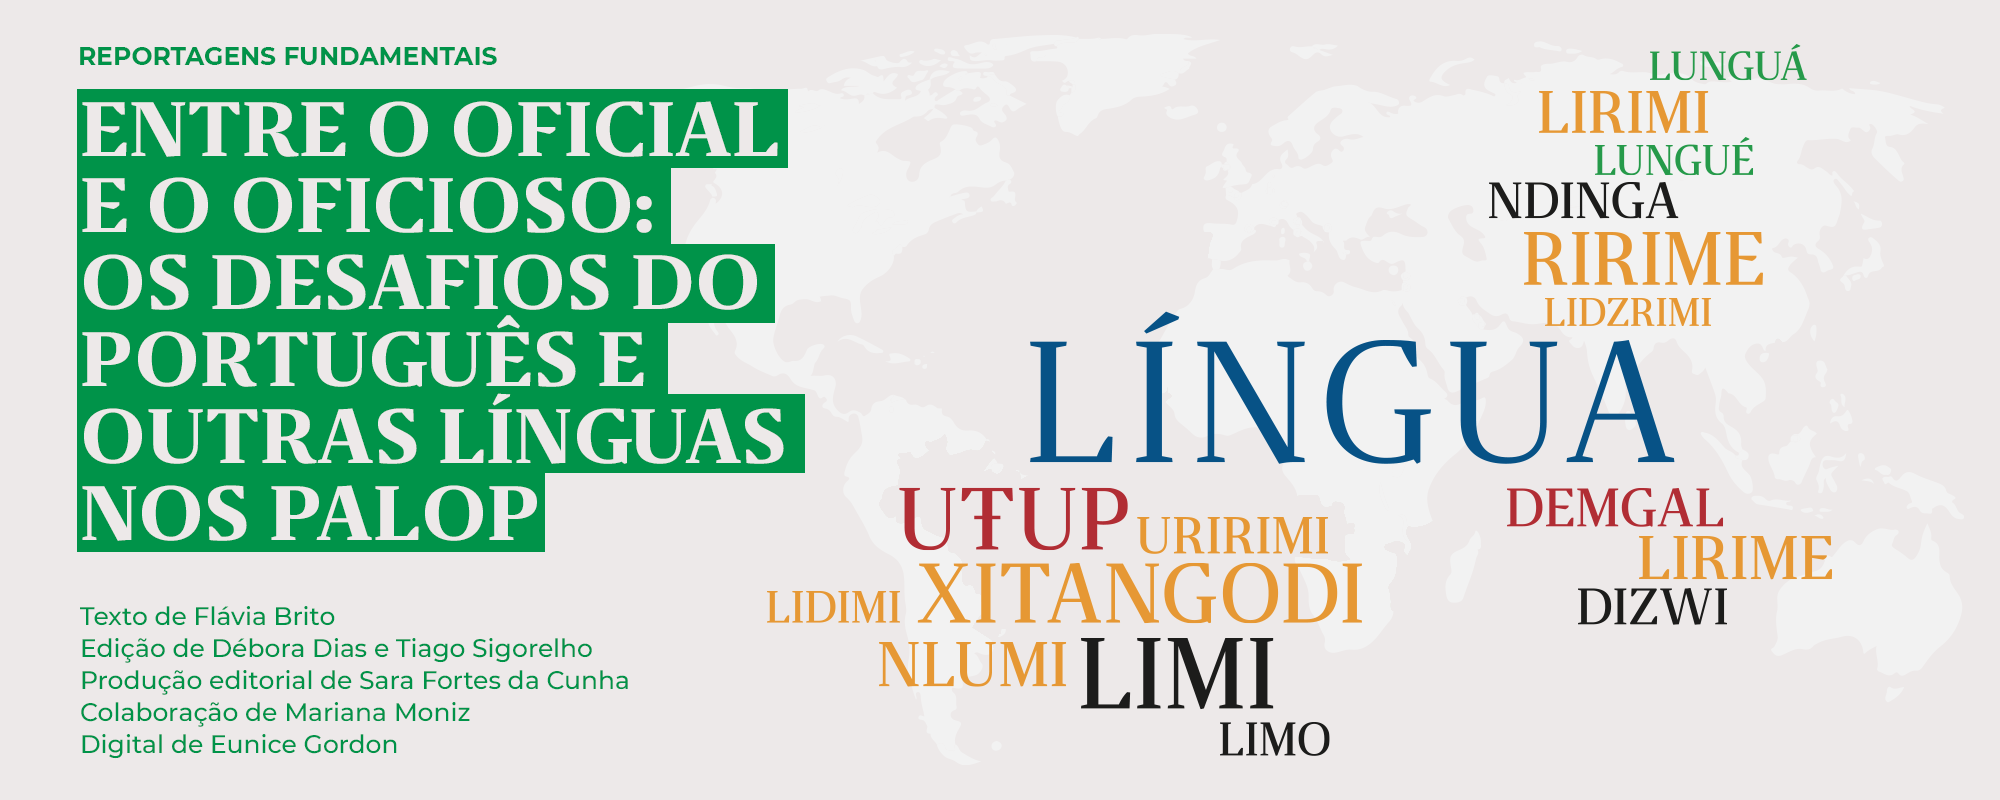 Linguee: dicionário online lança 218 novas combinações de idiomas -  Observatório da Língua Portuguesa